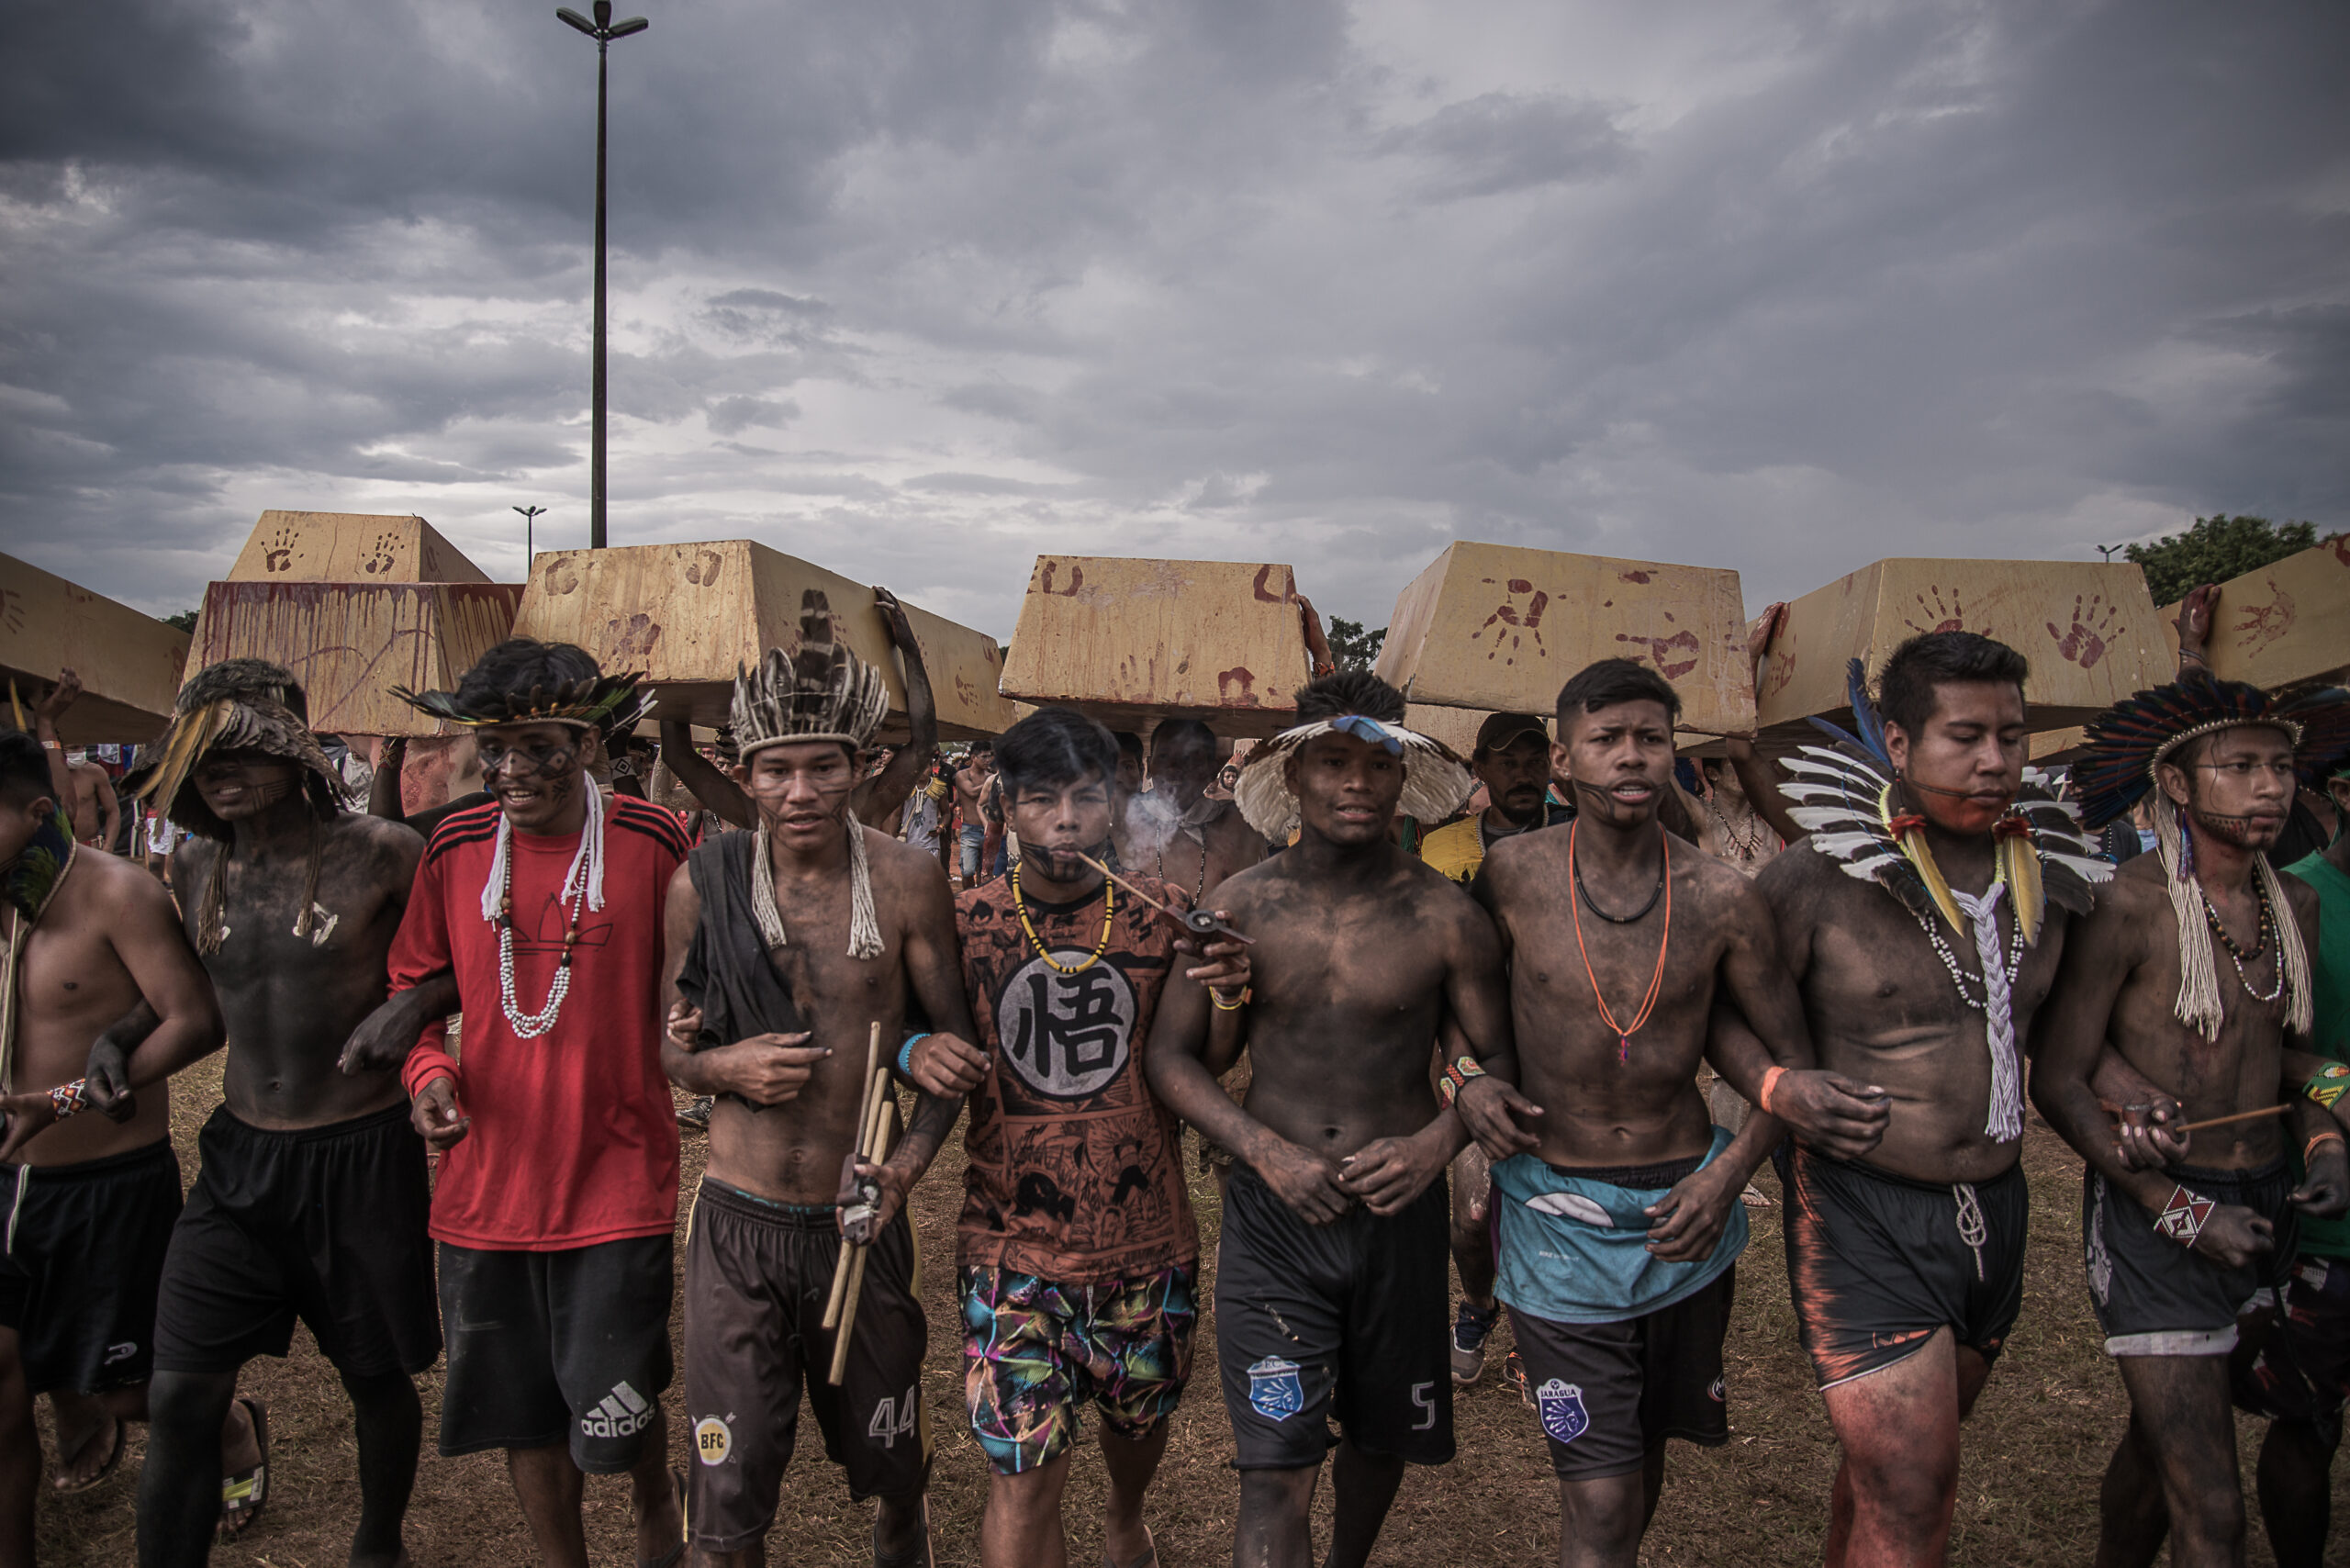 Indígenas protestam contra o garimpo ilegal na Amazônia no Acampamento Terra Livre, segurando caixões nas costas durante uma marcha.